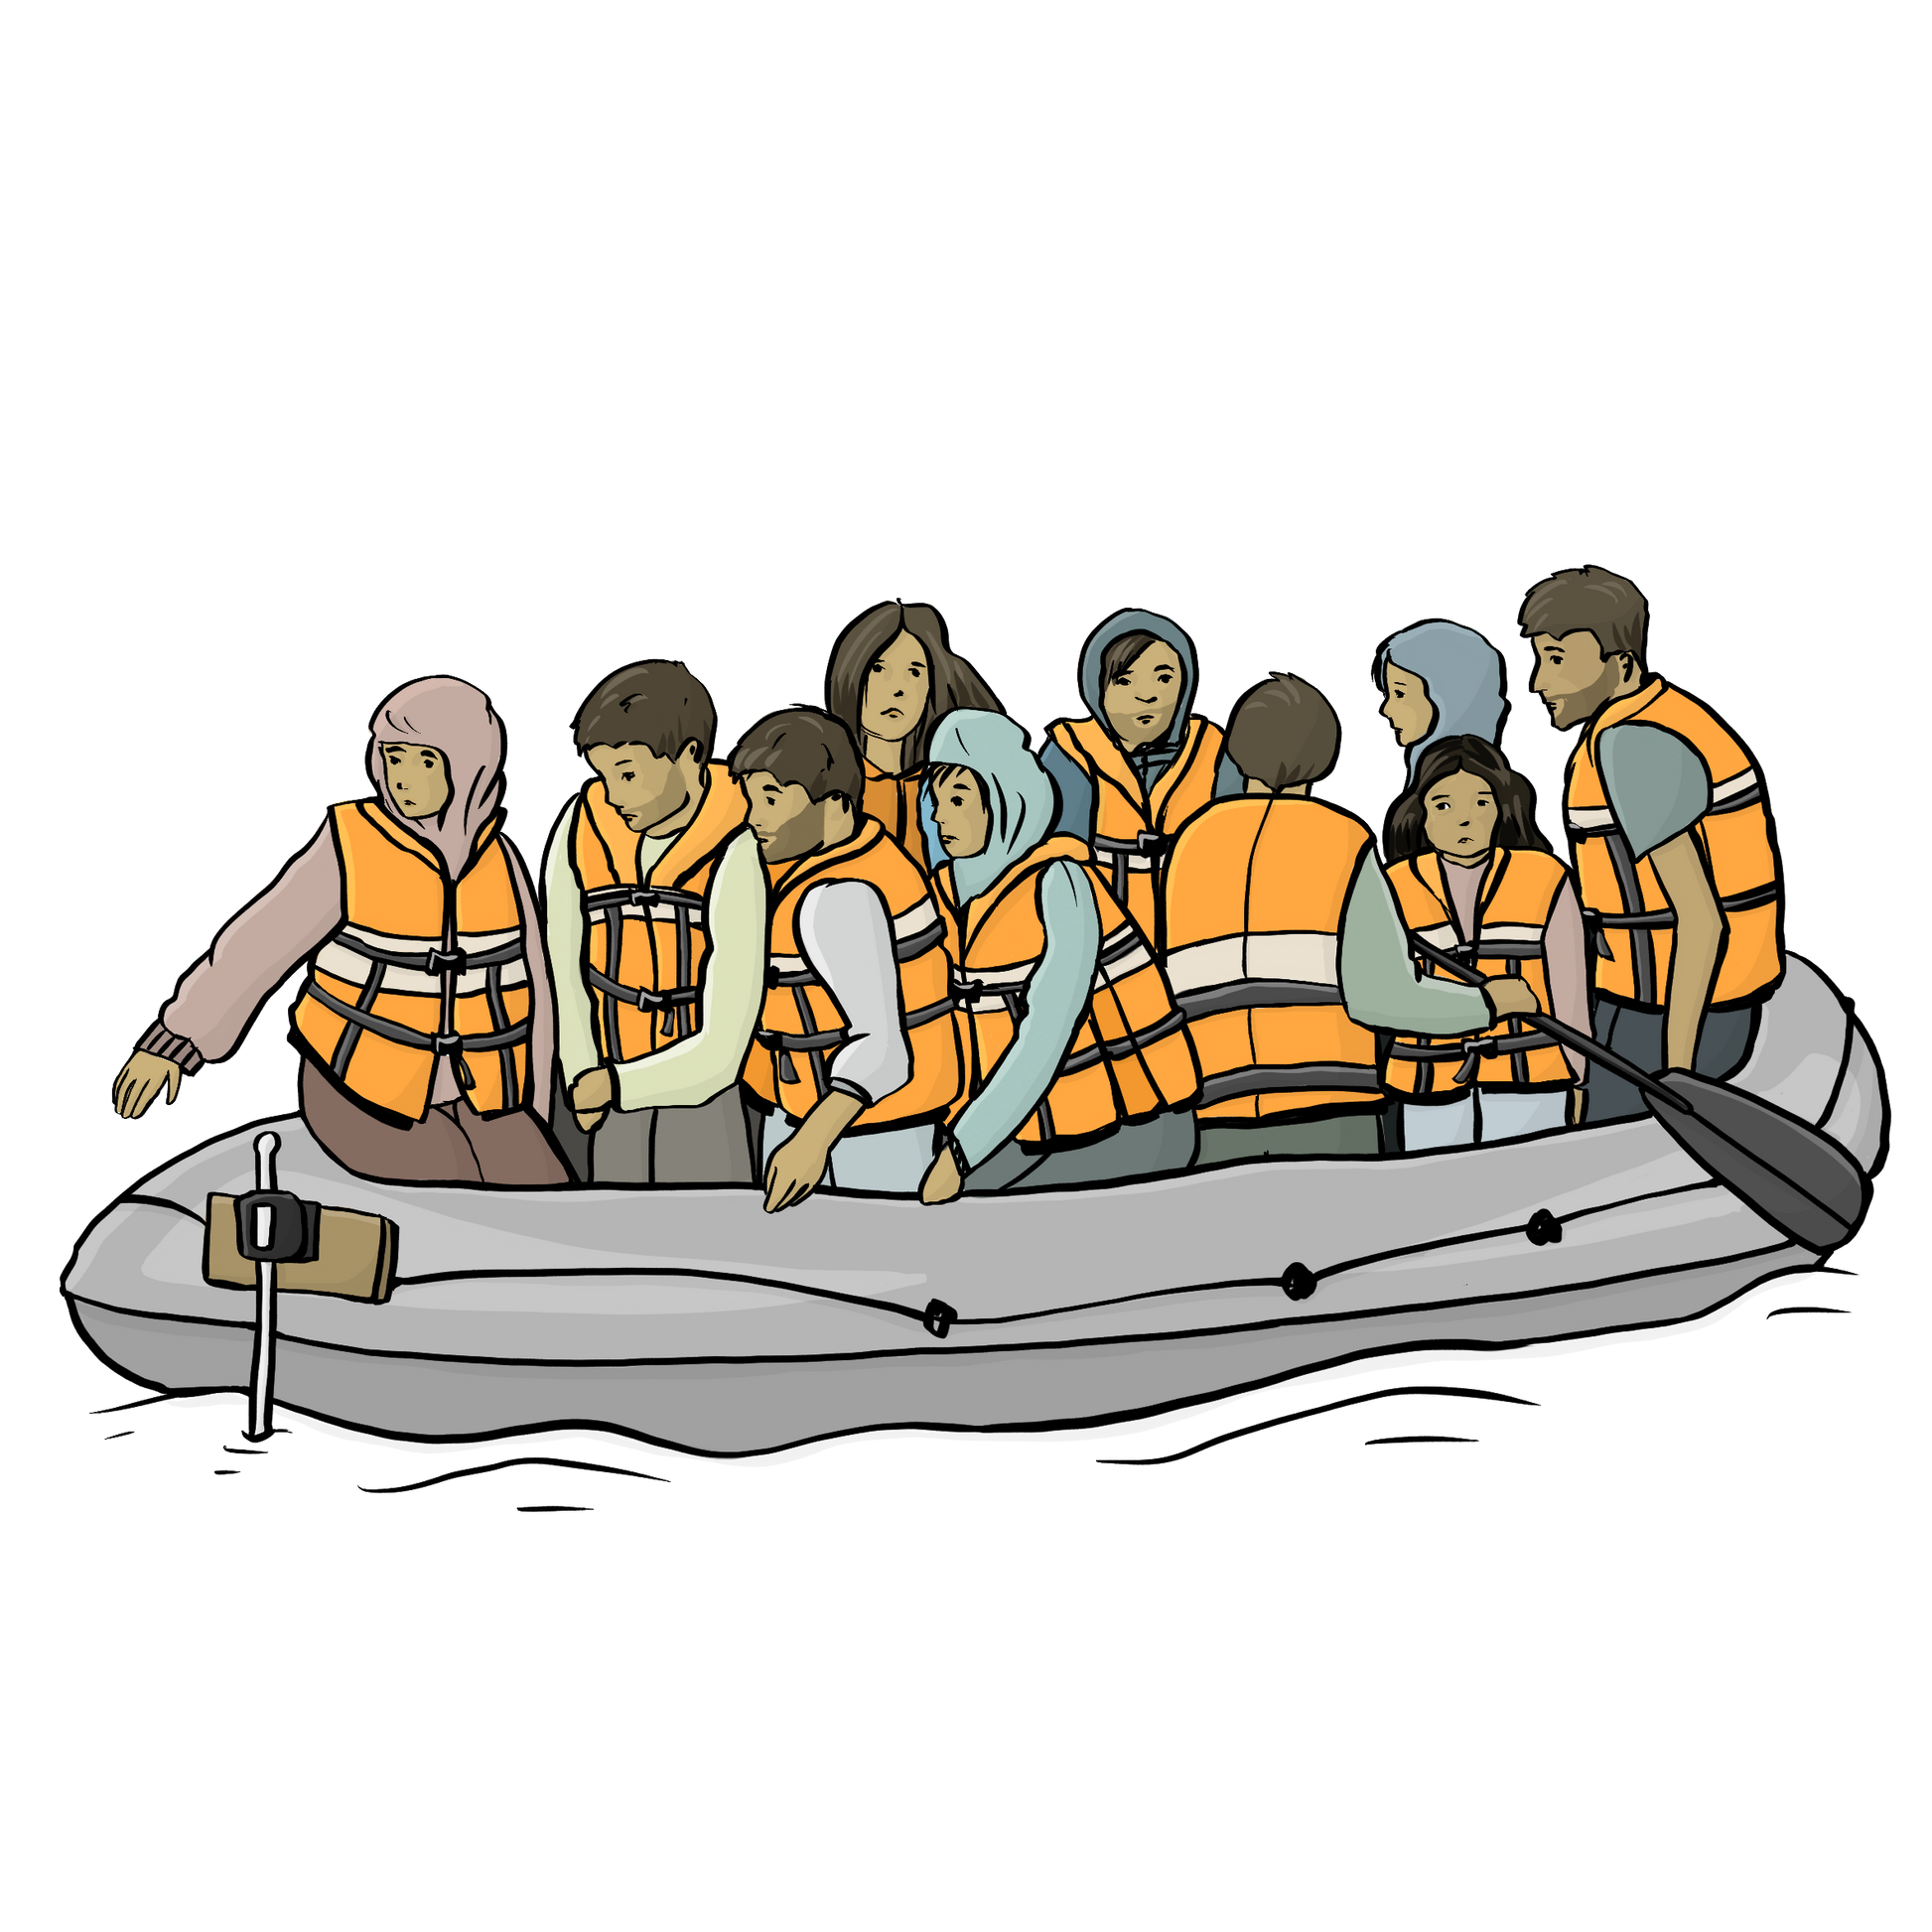 Viele Menschen mit Rettungs-Westen sitzen in einem Schlauchboot.